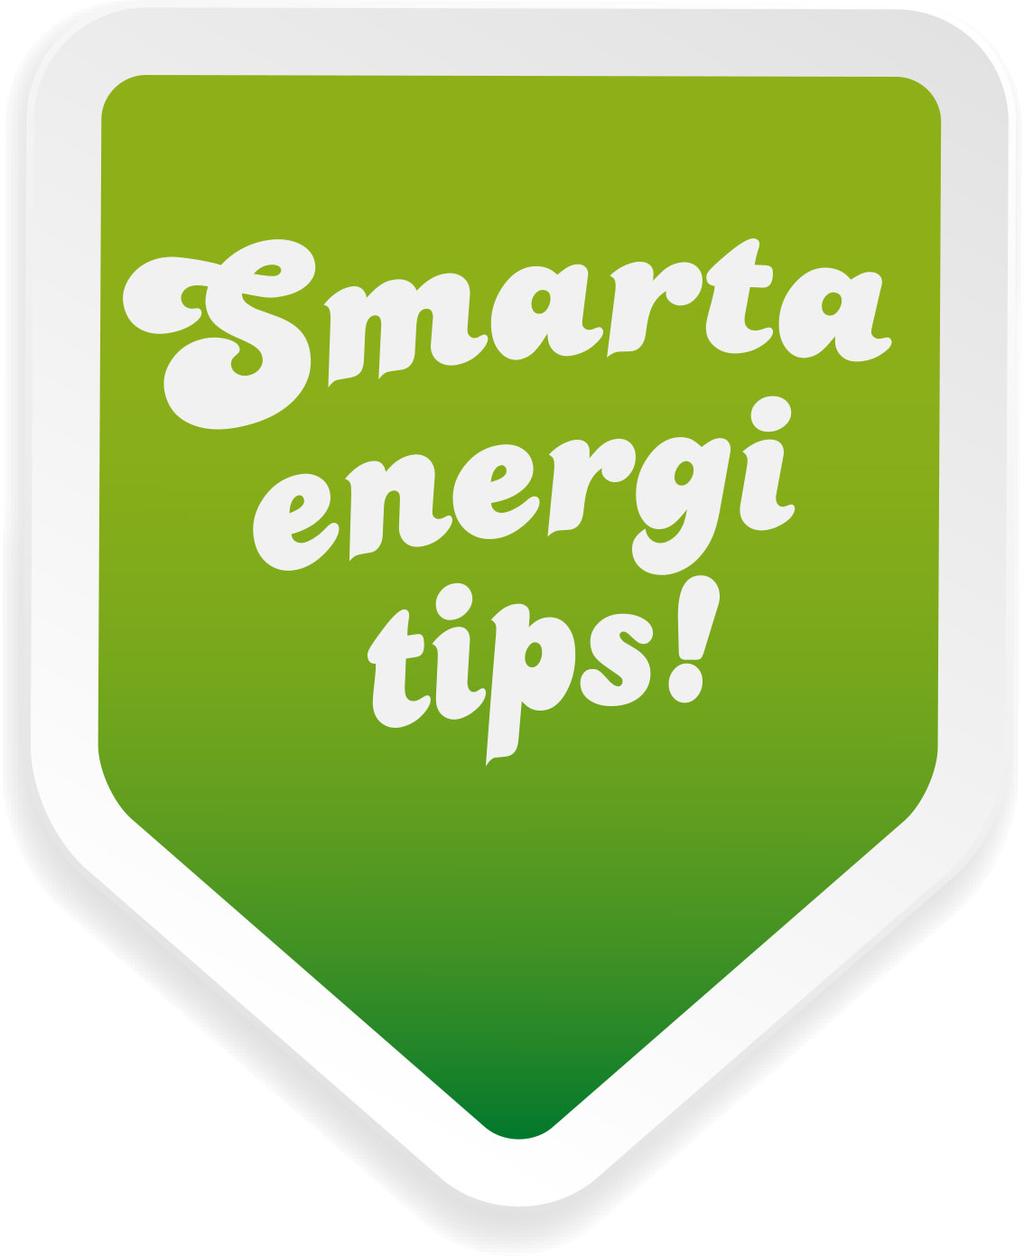 Du som bor i villa eller radhus kan ofta göra en del smarta förändringar som ger dig möjligheter till att minska energianvändning, få mer pengar kvar i plånboken och dessutom bidra till